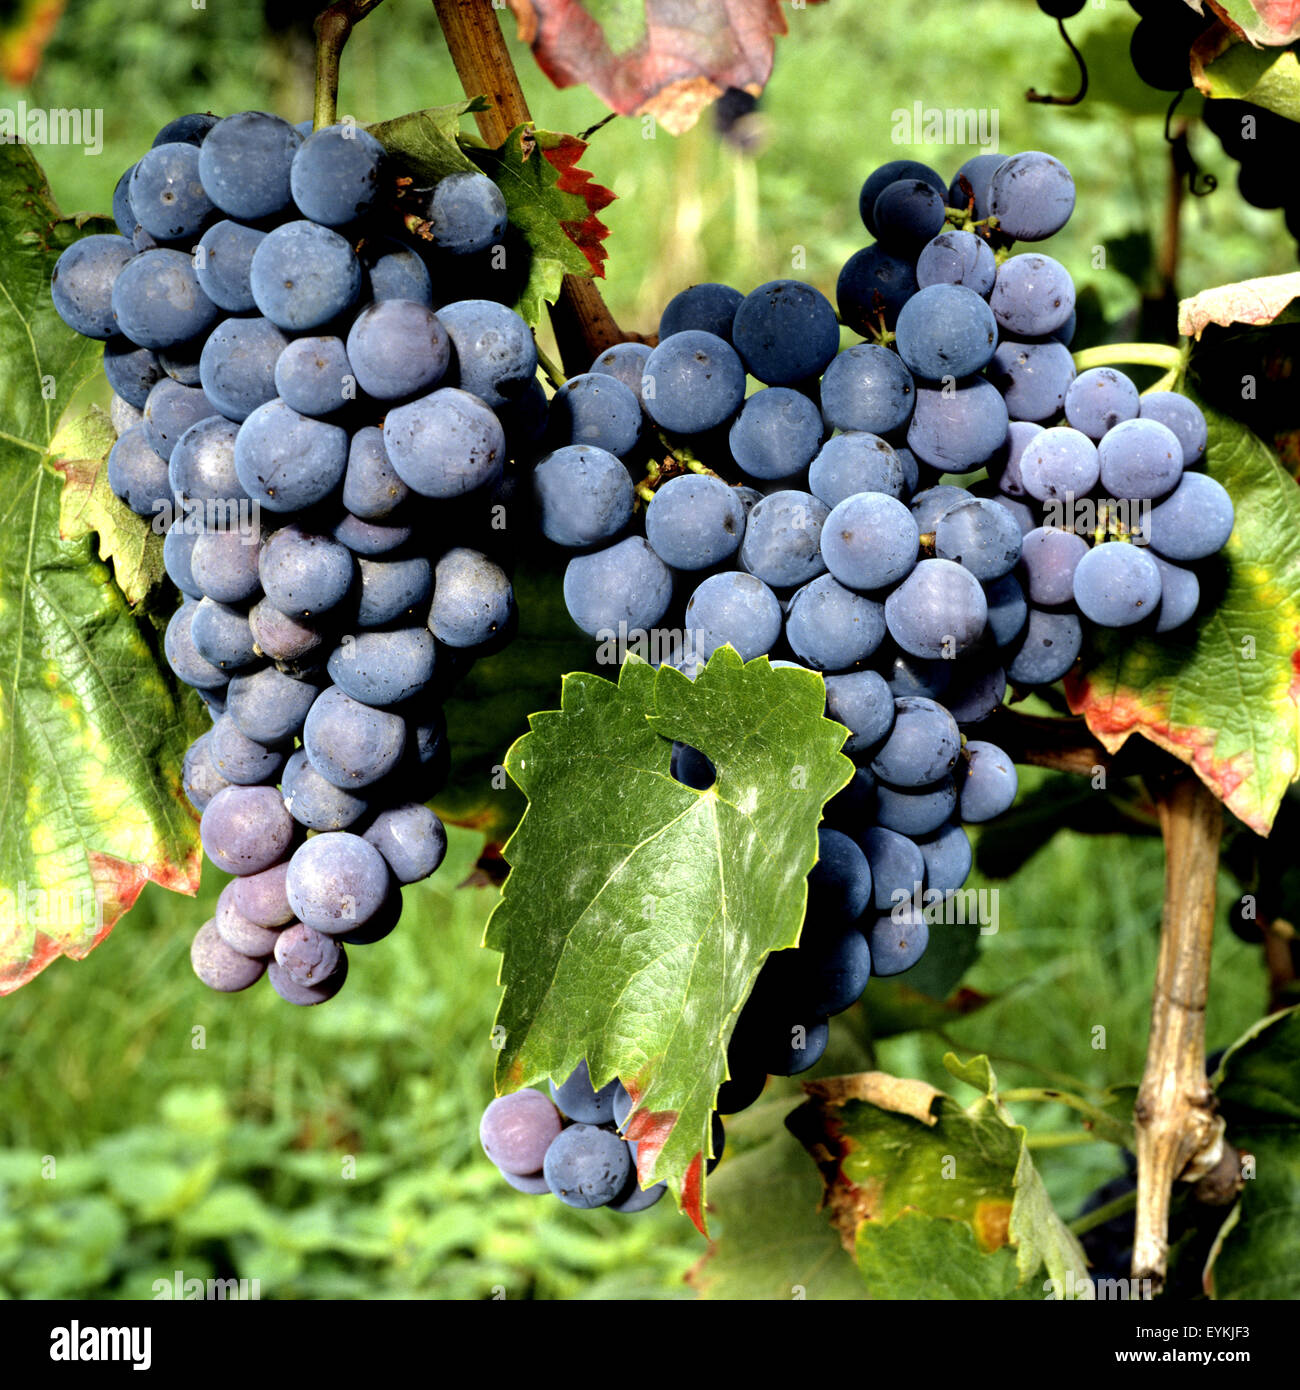 Weintrauben, Kek kardake, Vitis vinifera, Wein, Weinpflanzen, Reben, Fruechte, Beeren, Obst, Stock Photo